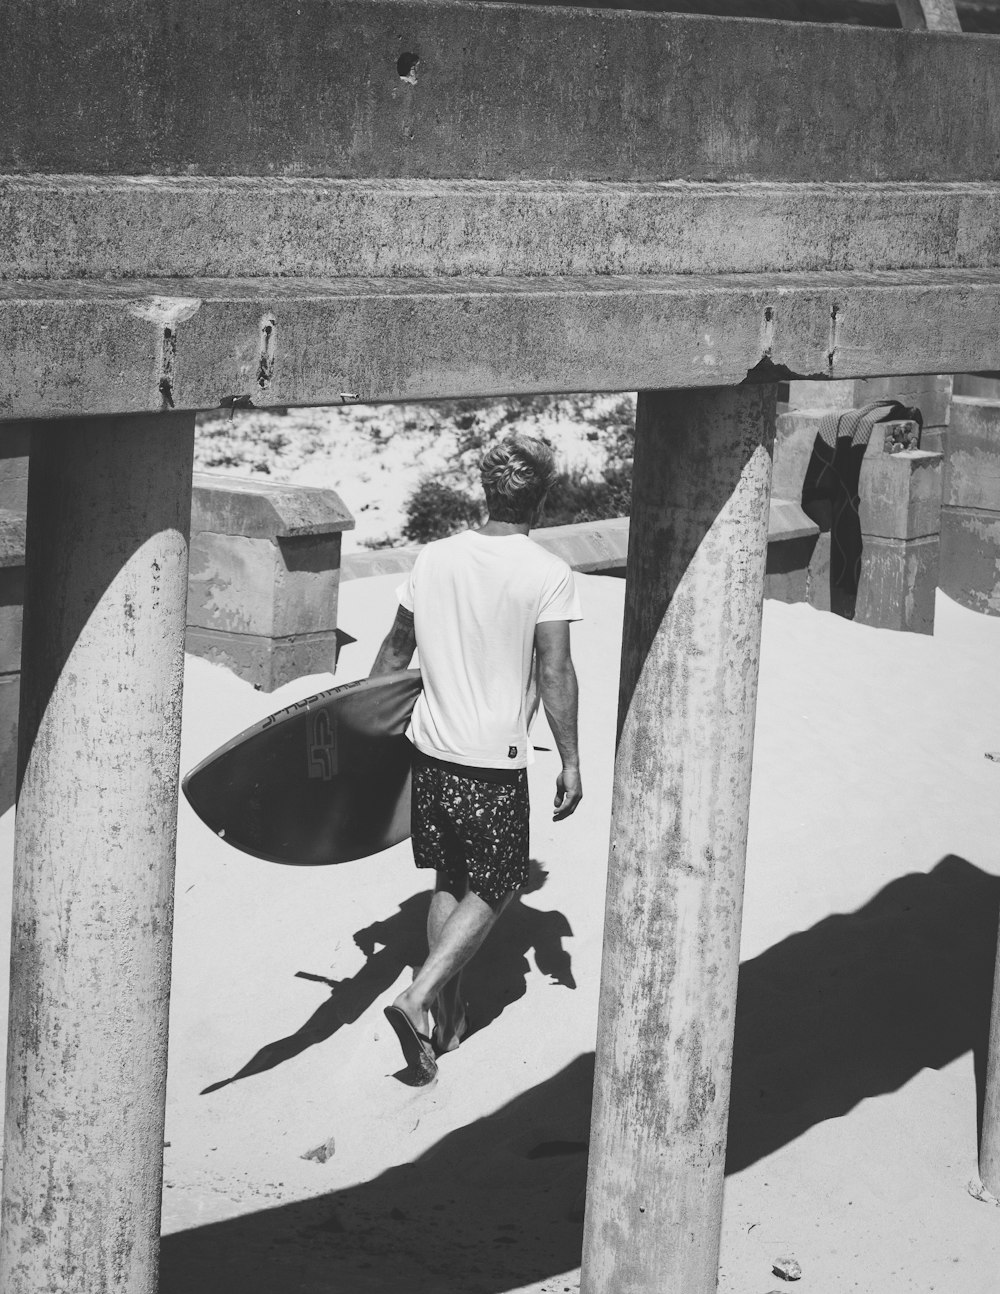 Photographie en niveaux de gris d’un homme tenant une planche de surf